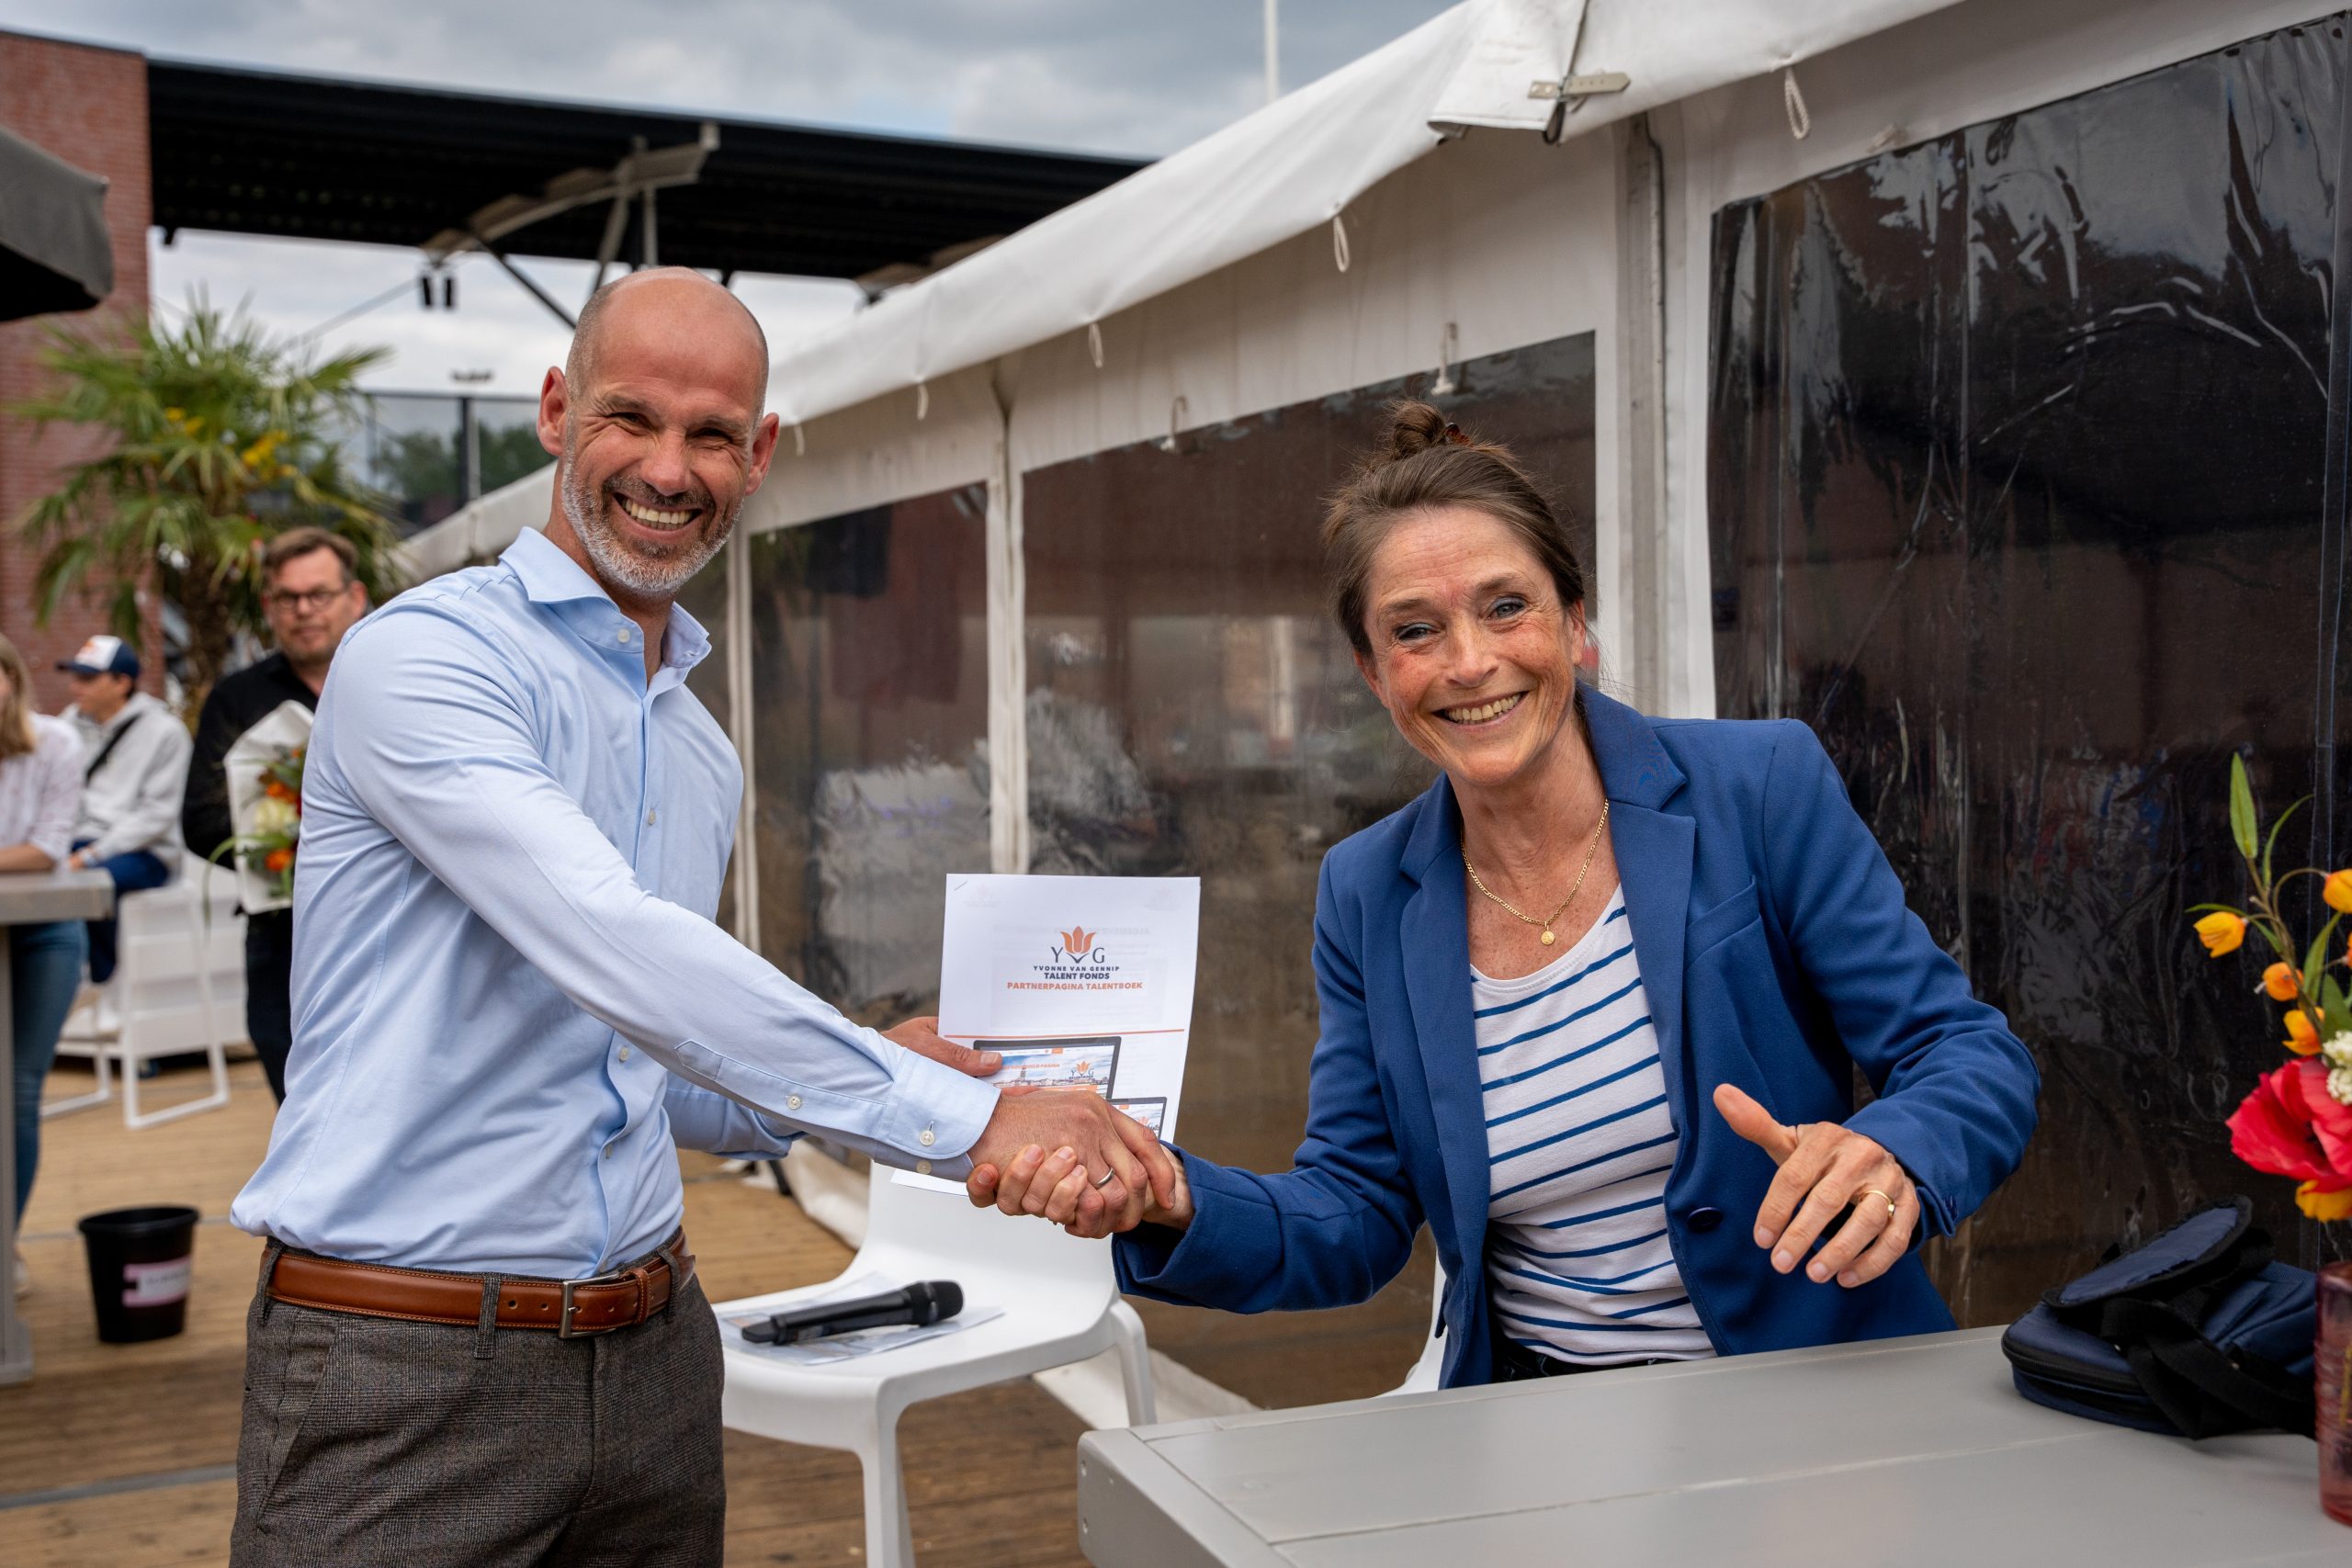 Sportnetwerk Overijssel gaat samenwerken met Yvonne van Gennip Talent Fonds